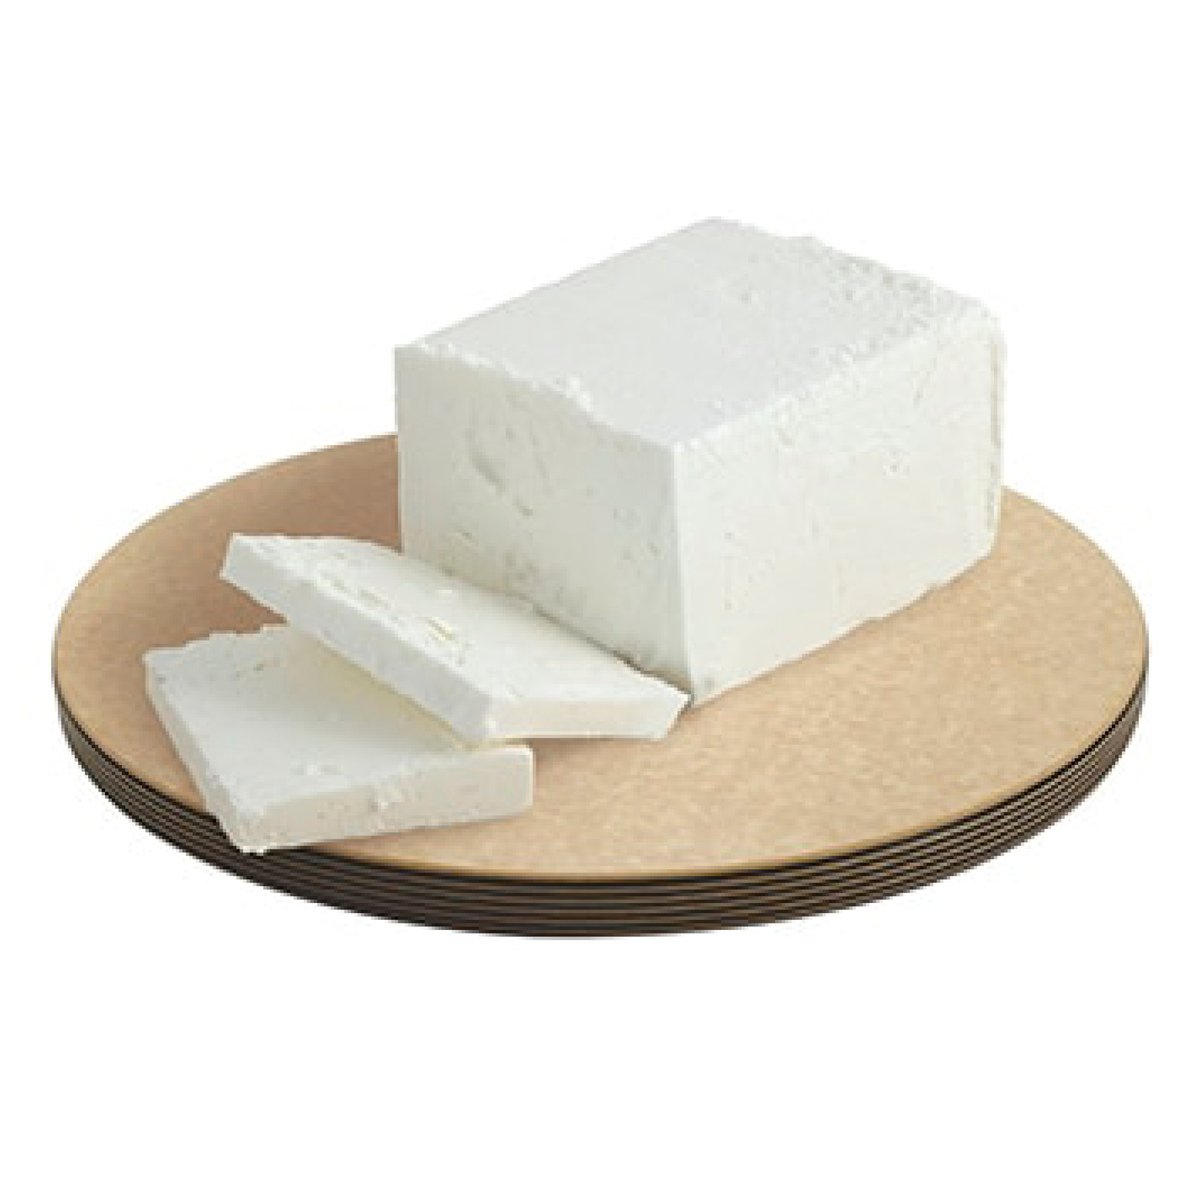 اشتري قم بشراء جبنة كريم مزدوجة سعودية 250 جم Online at Best Price من الموقع - من لولو هايبر ماركت White Cheese في السعودية